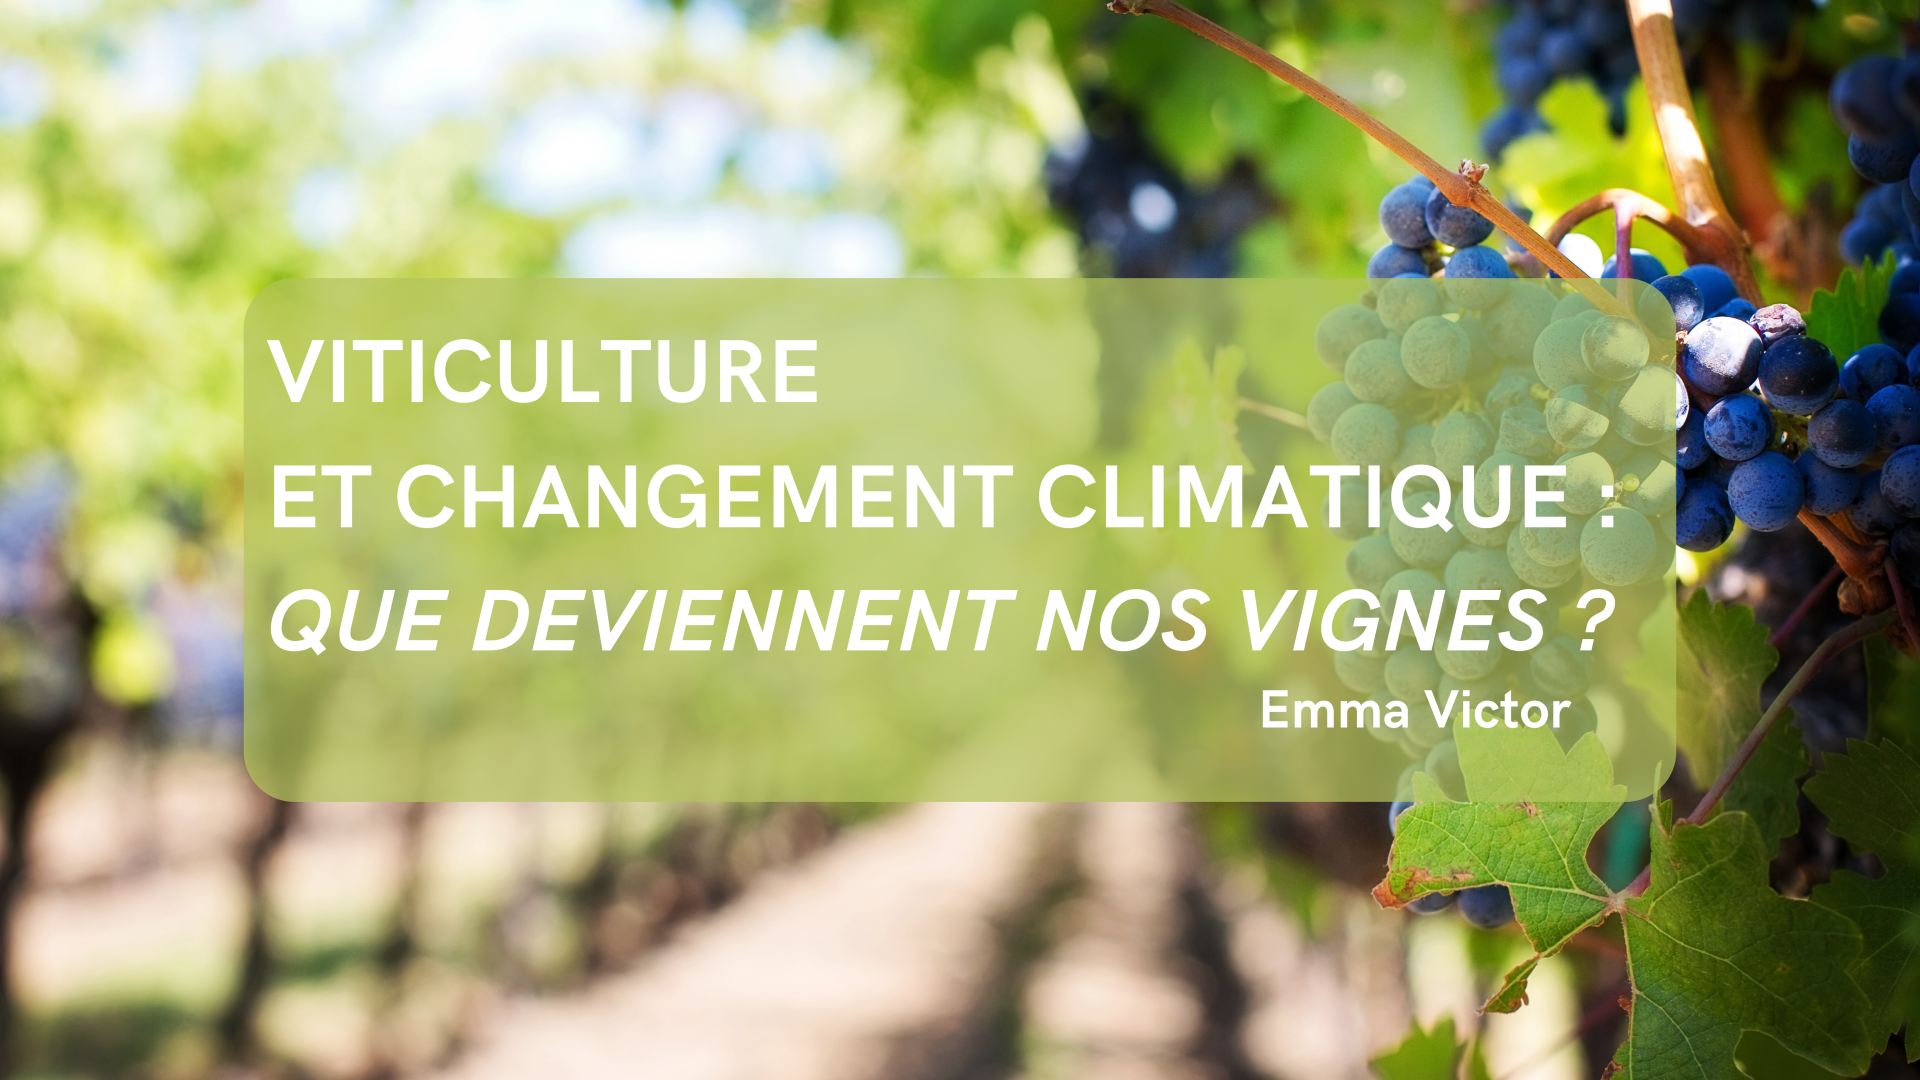 Viticulture et changement climatique : Que deviennent nos vignes ?